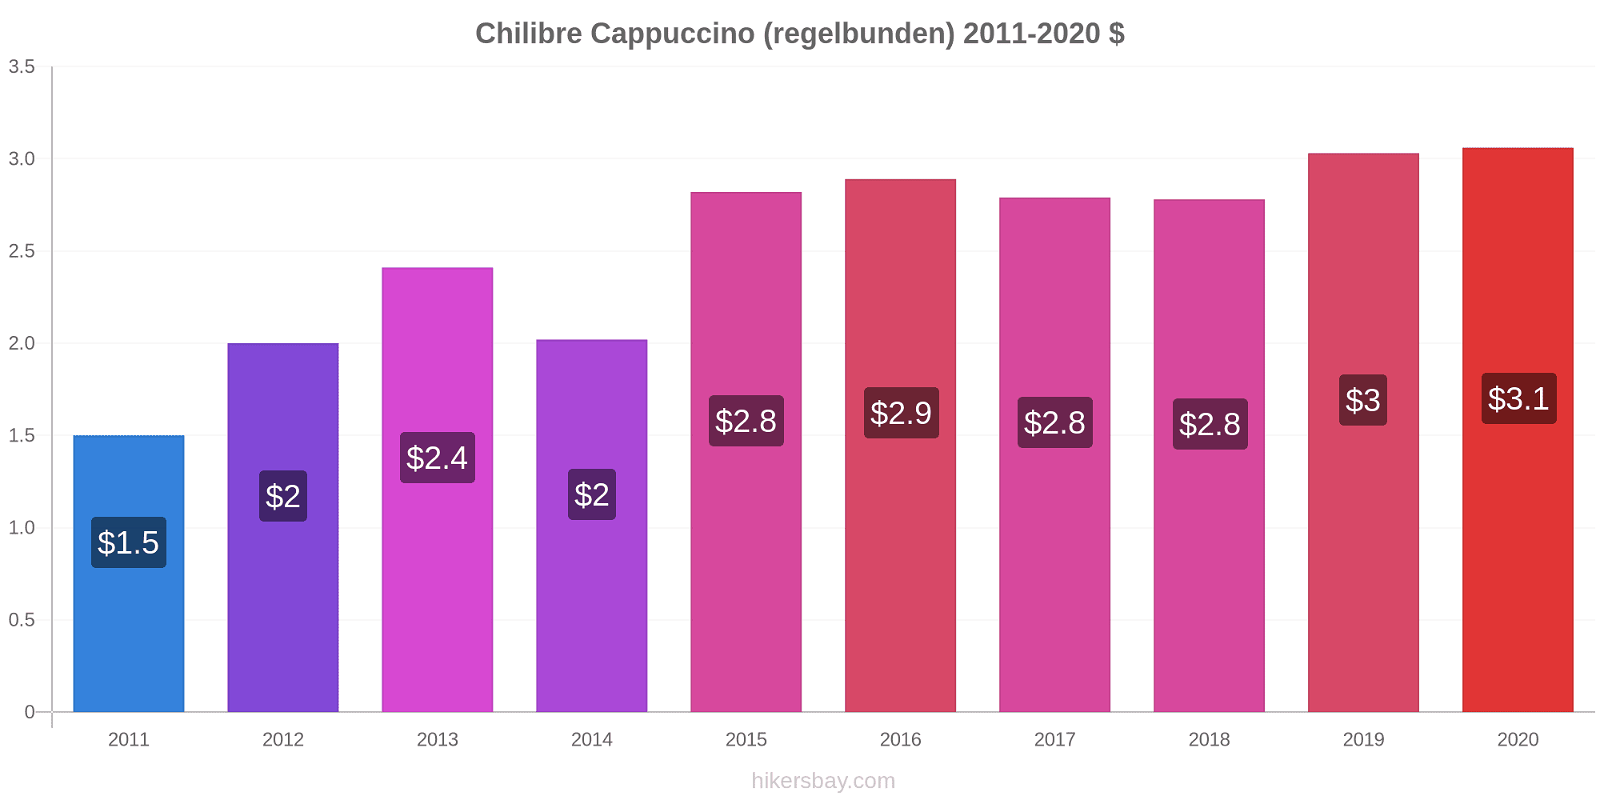 Chilibre prisförändringar Cappuccino (regelbunden) hikersbay.com